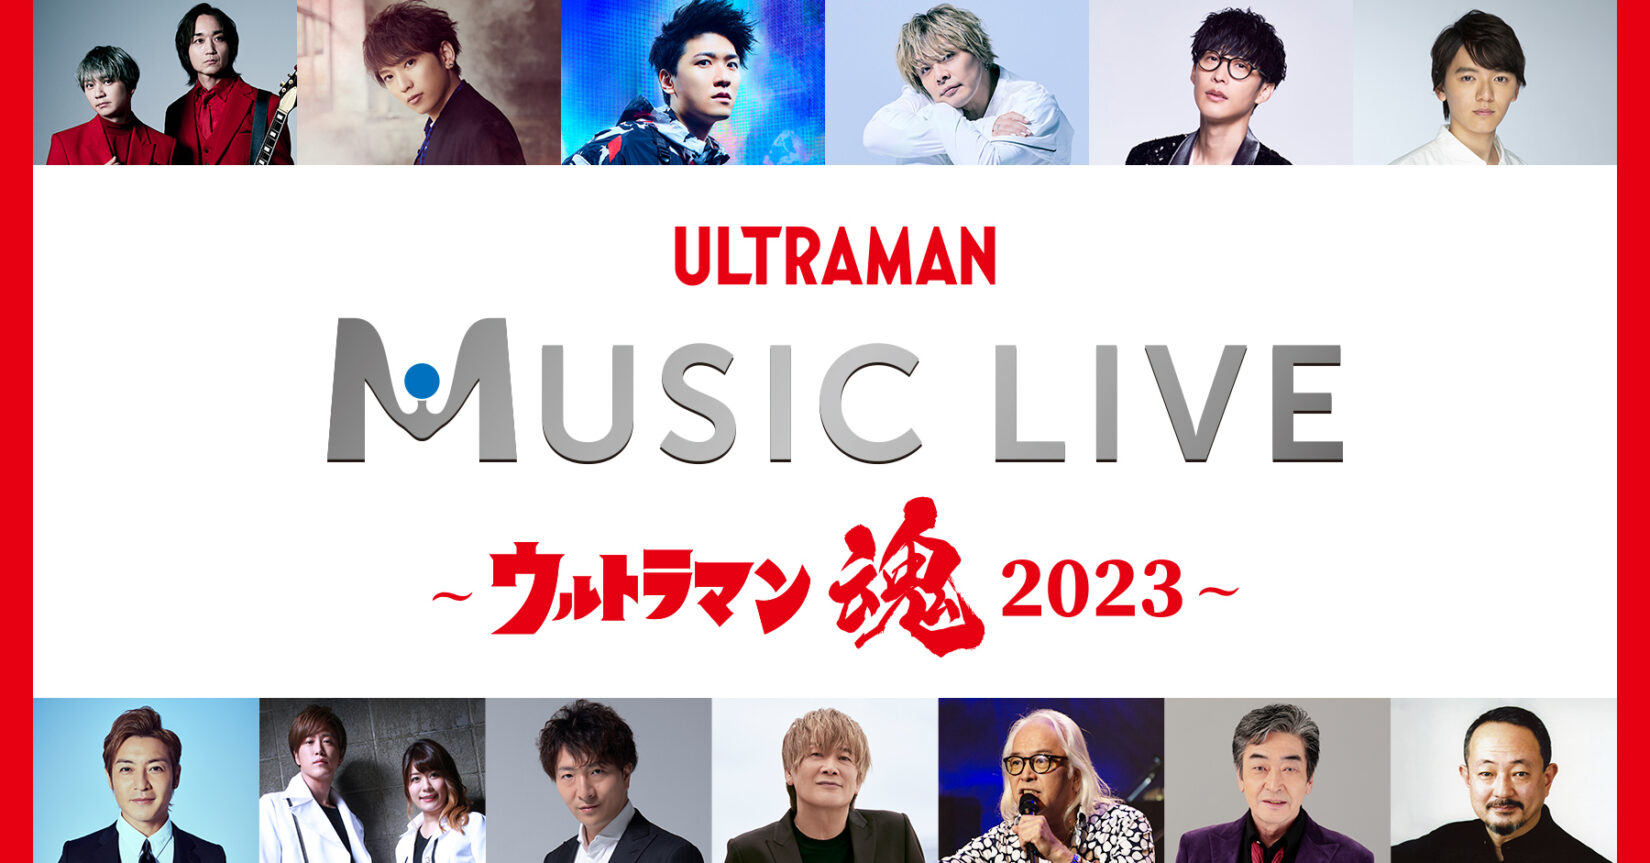 ツブコン2023」プログラム発表第1弾「ULTRAMAN MUSIC LIVE 